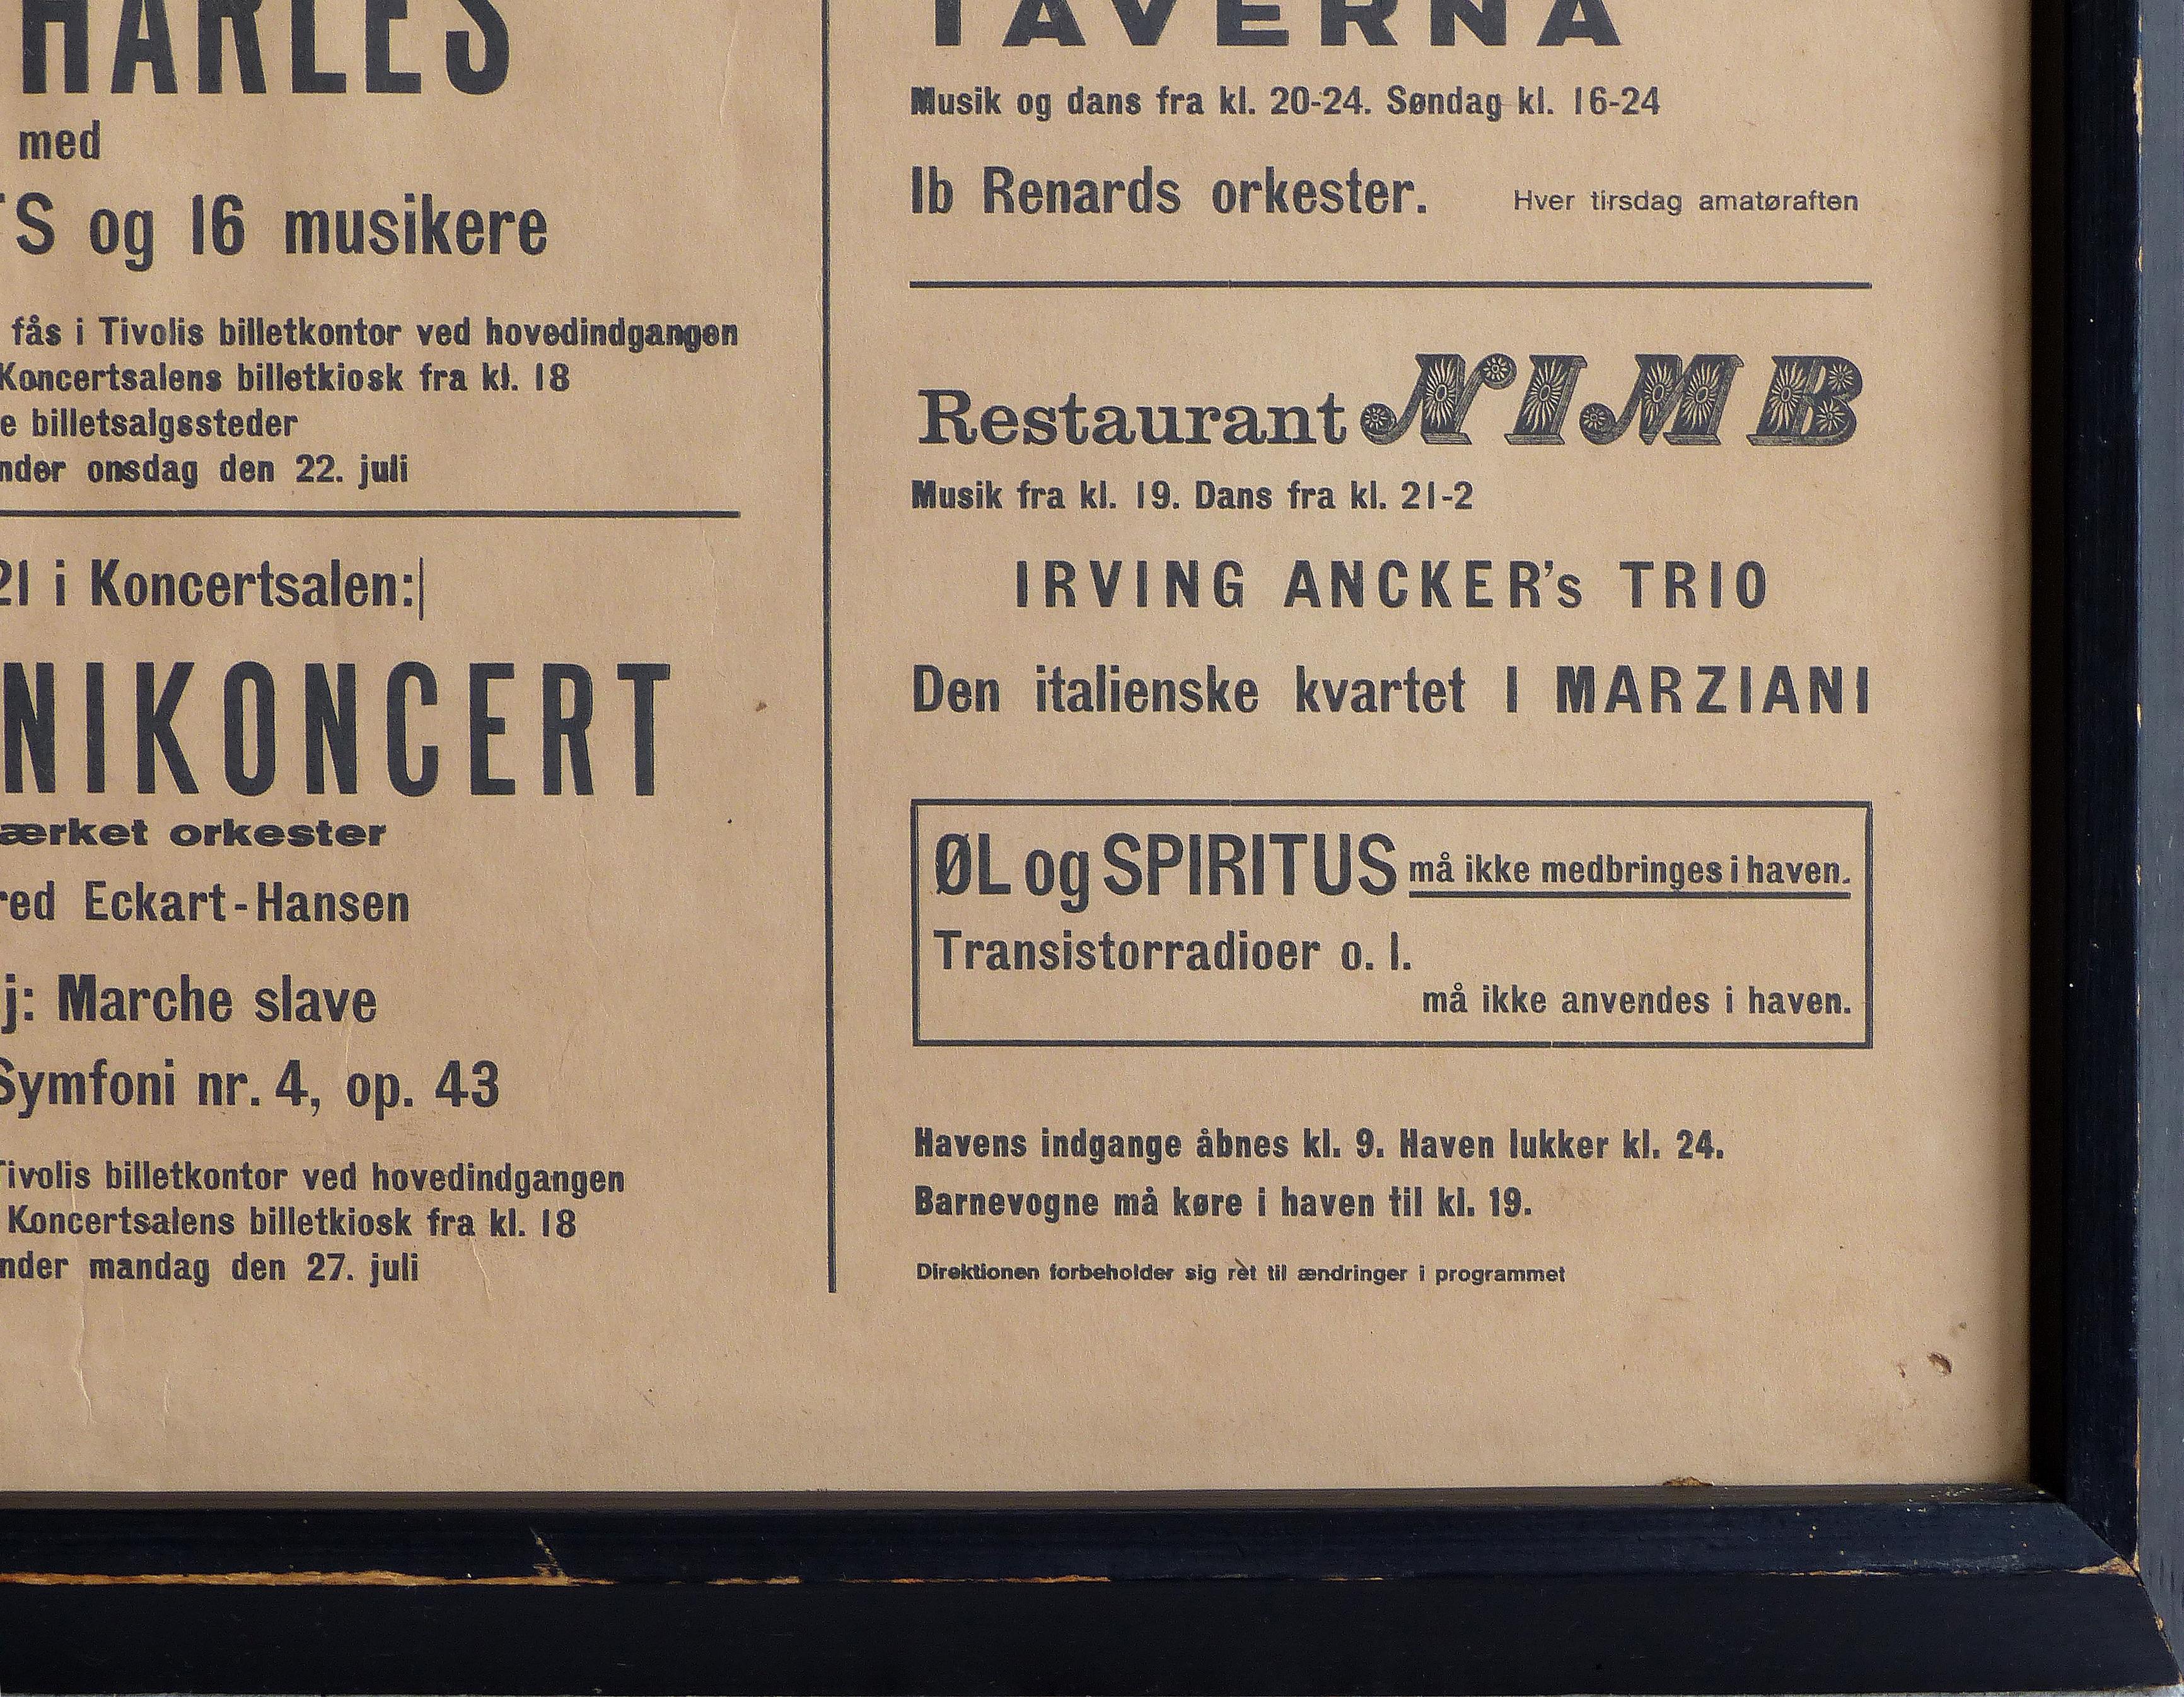 Danish 1964 Concert Poster from the Tivoli Gardens in Copenhagen, Denmark